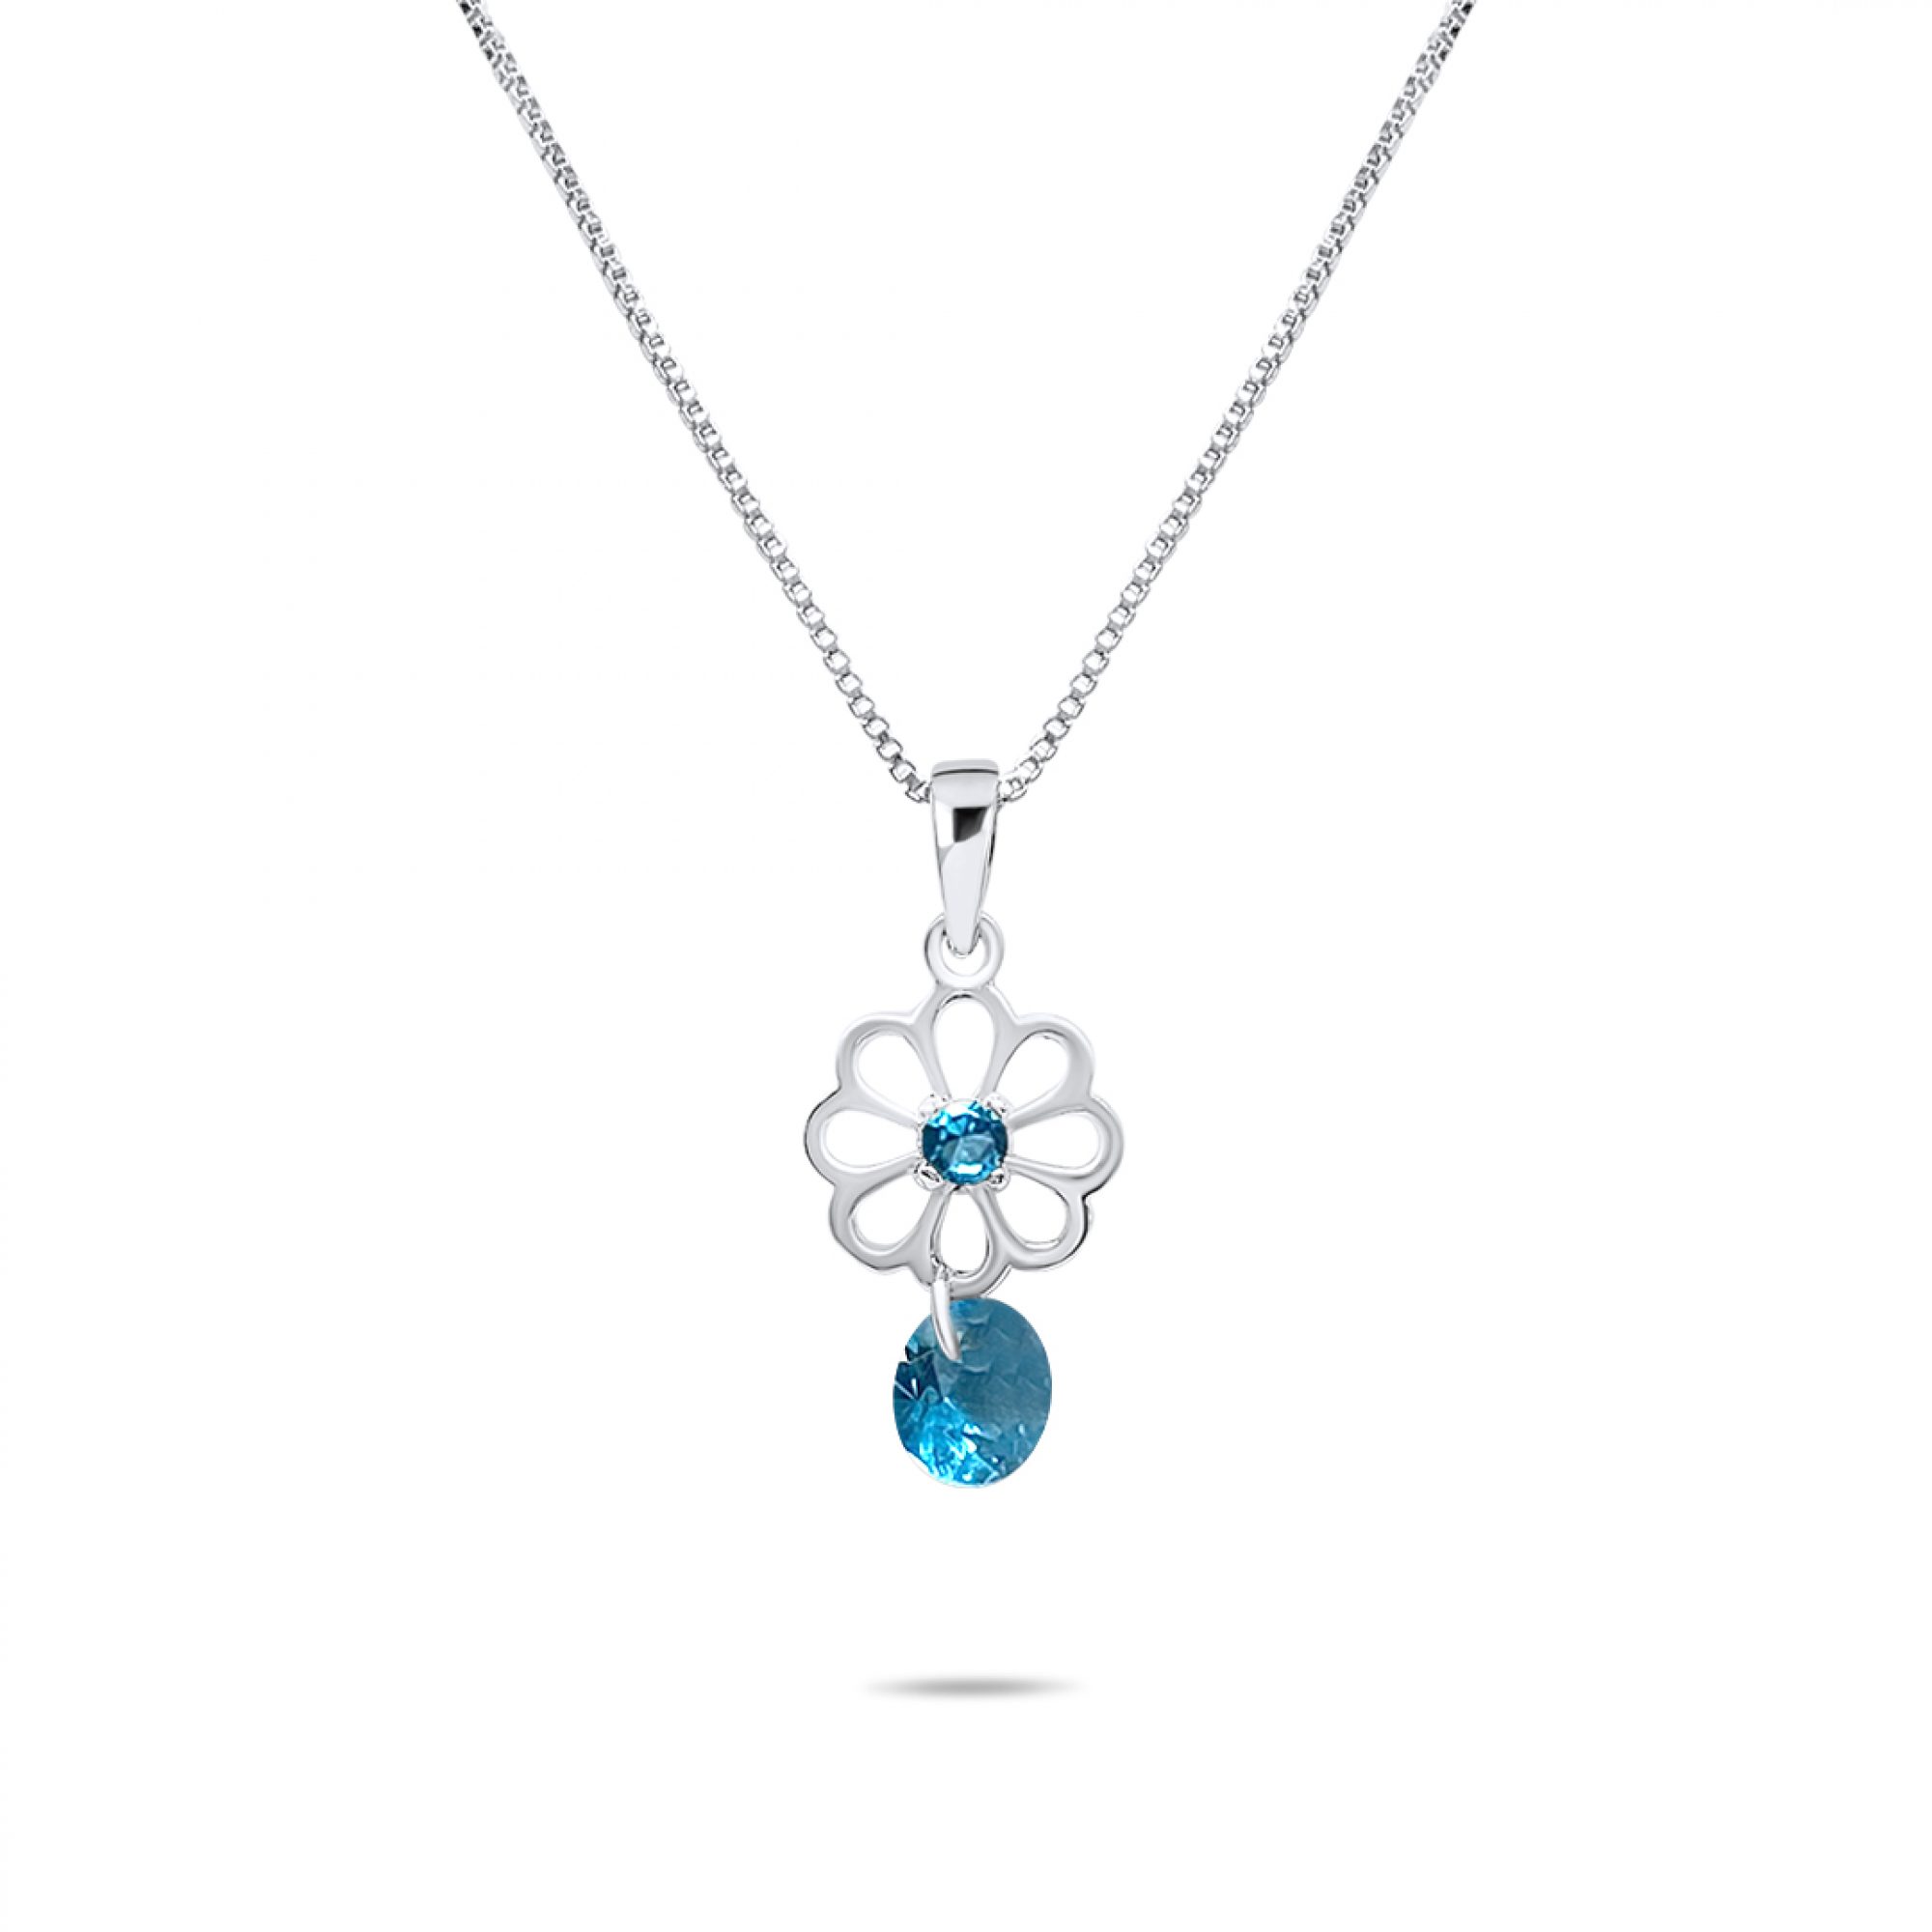 Necklace with aquamarine stones